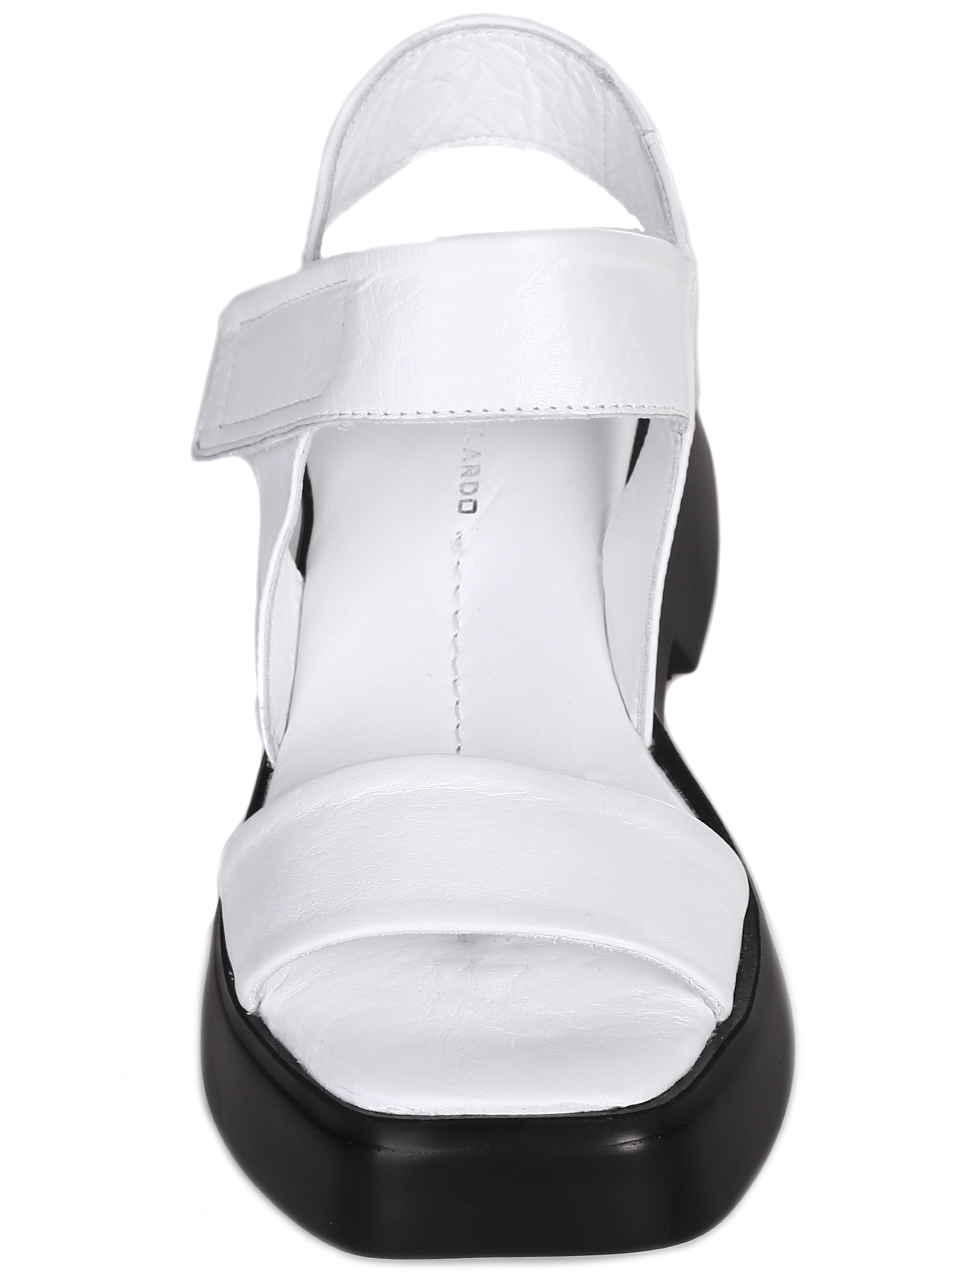 Ежедневни дамски сандали на платформа от естествена кожа 4AT-23285 white